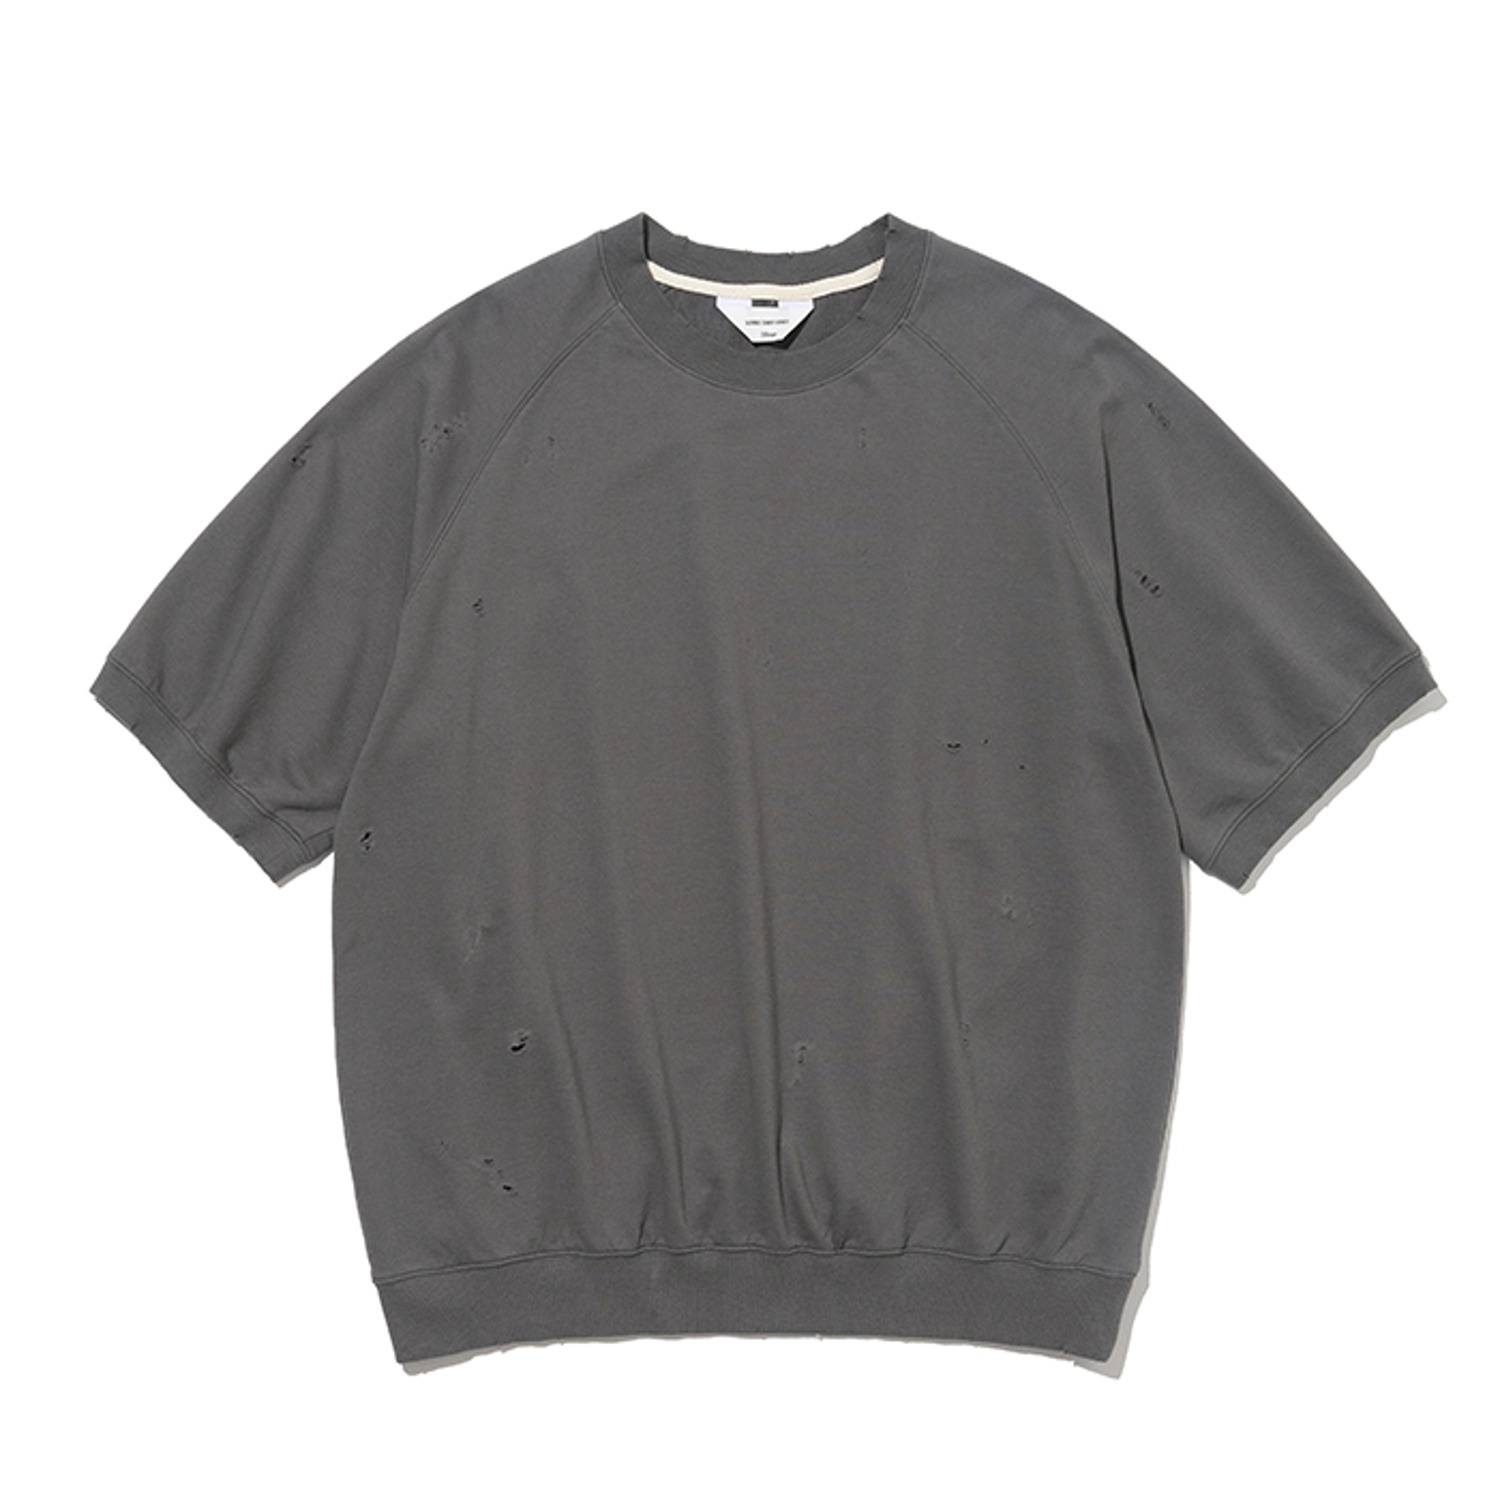 vintage half sweatshirts grey